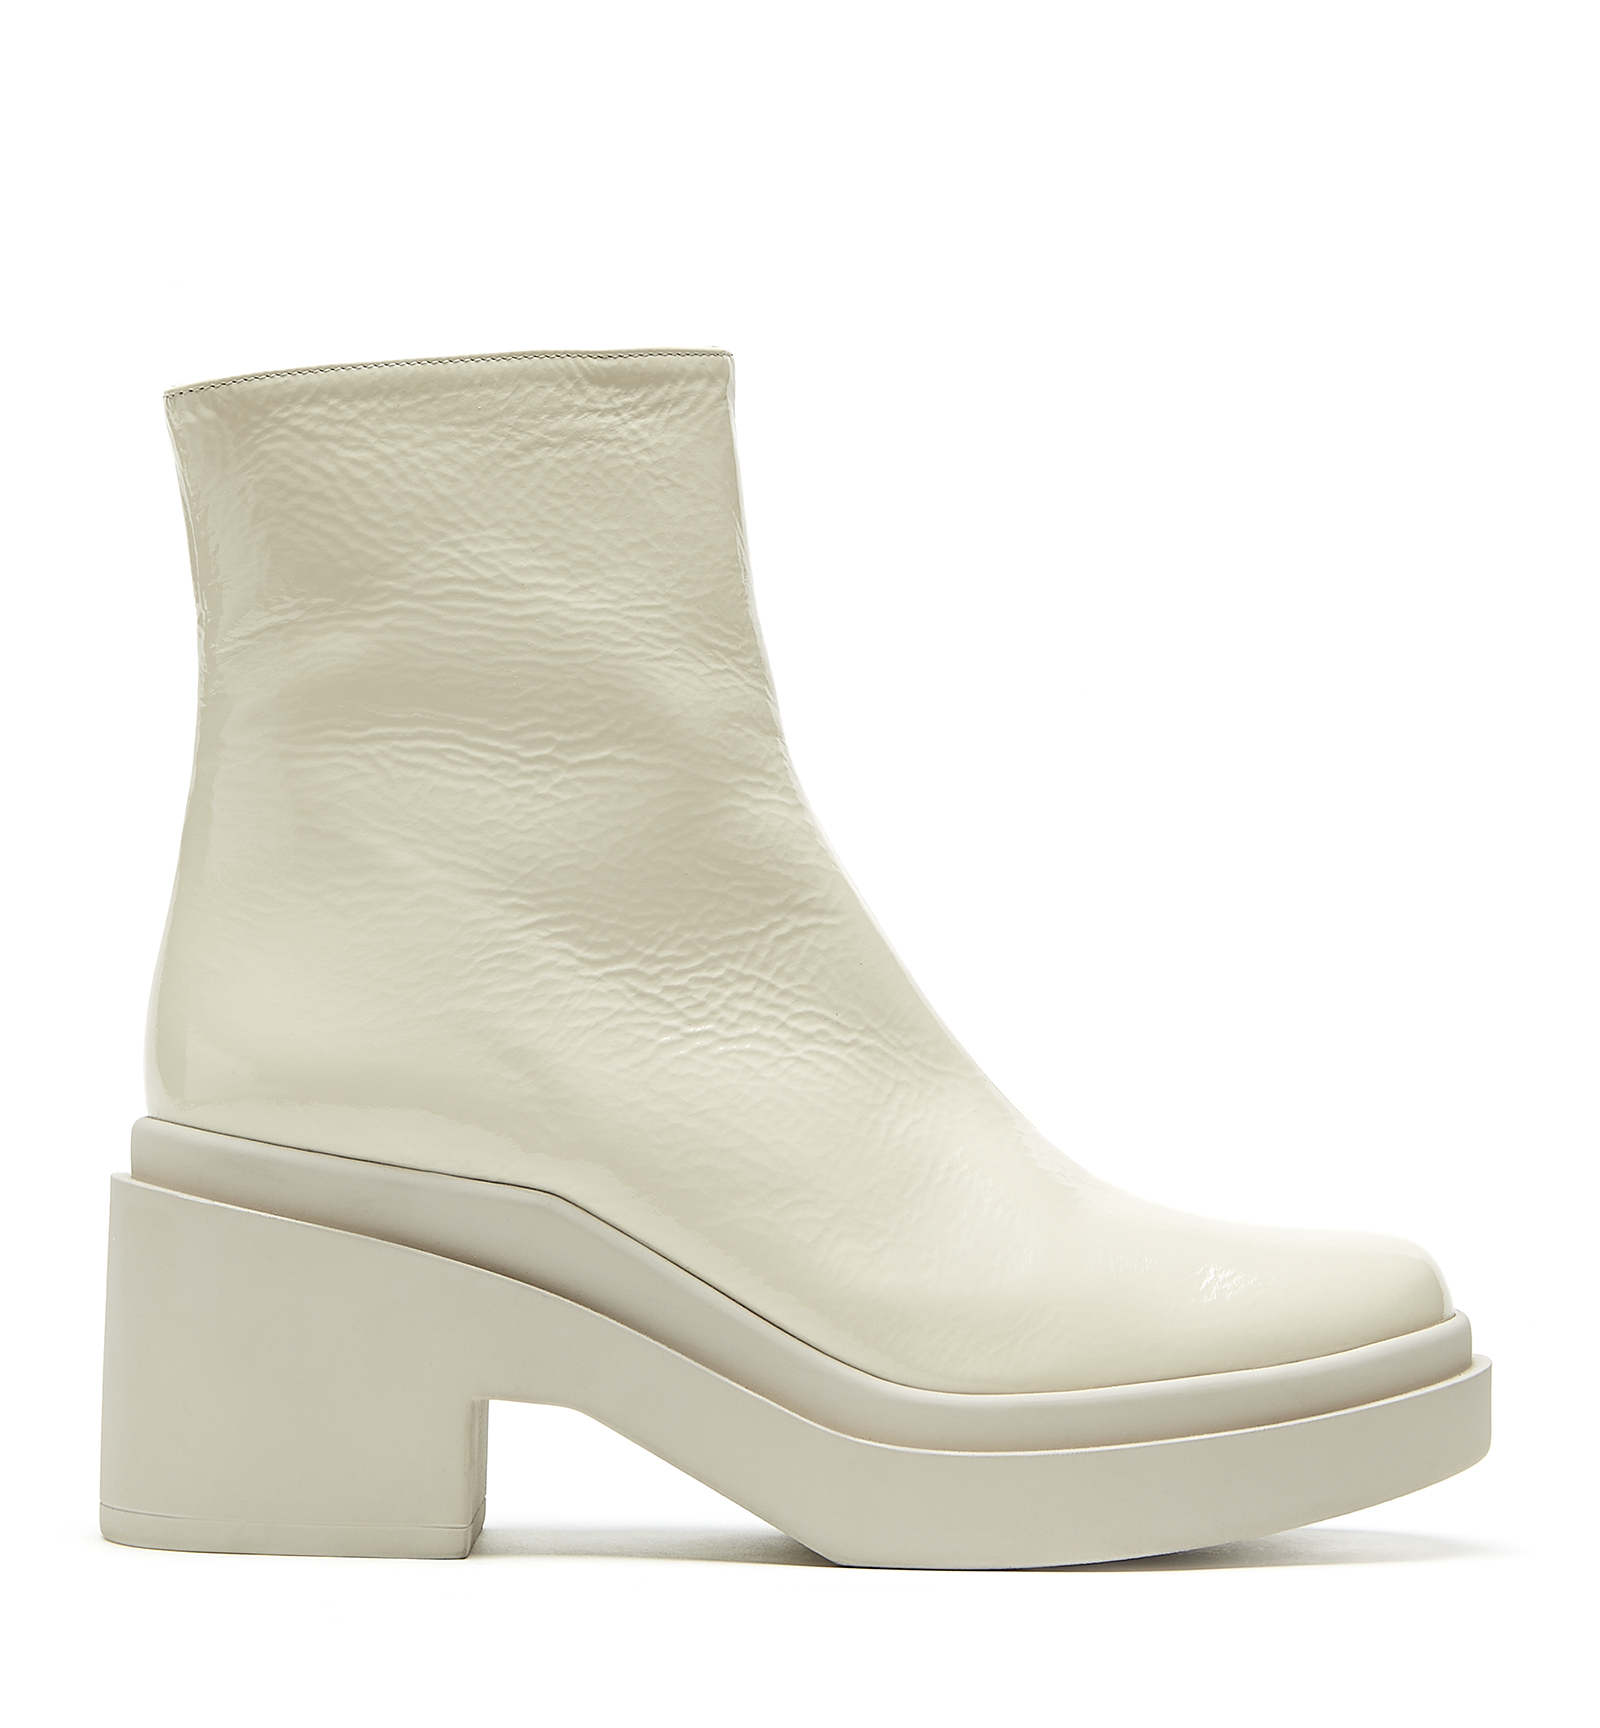 Mascot Pantalon thermique Winnipeg blanc - Schlenker AG - matériel de  nettoyage Vikan - équipement d'usine - vêtements - bottes - chaussures